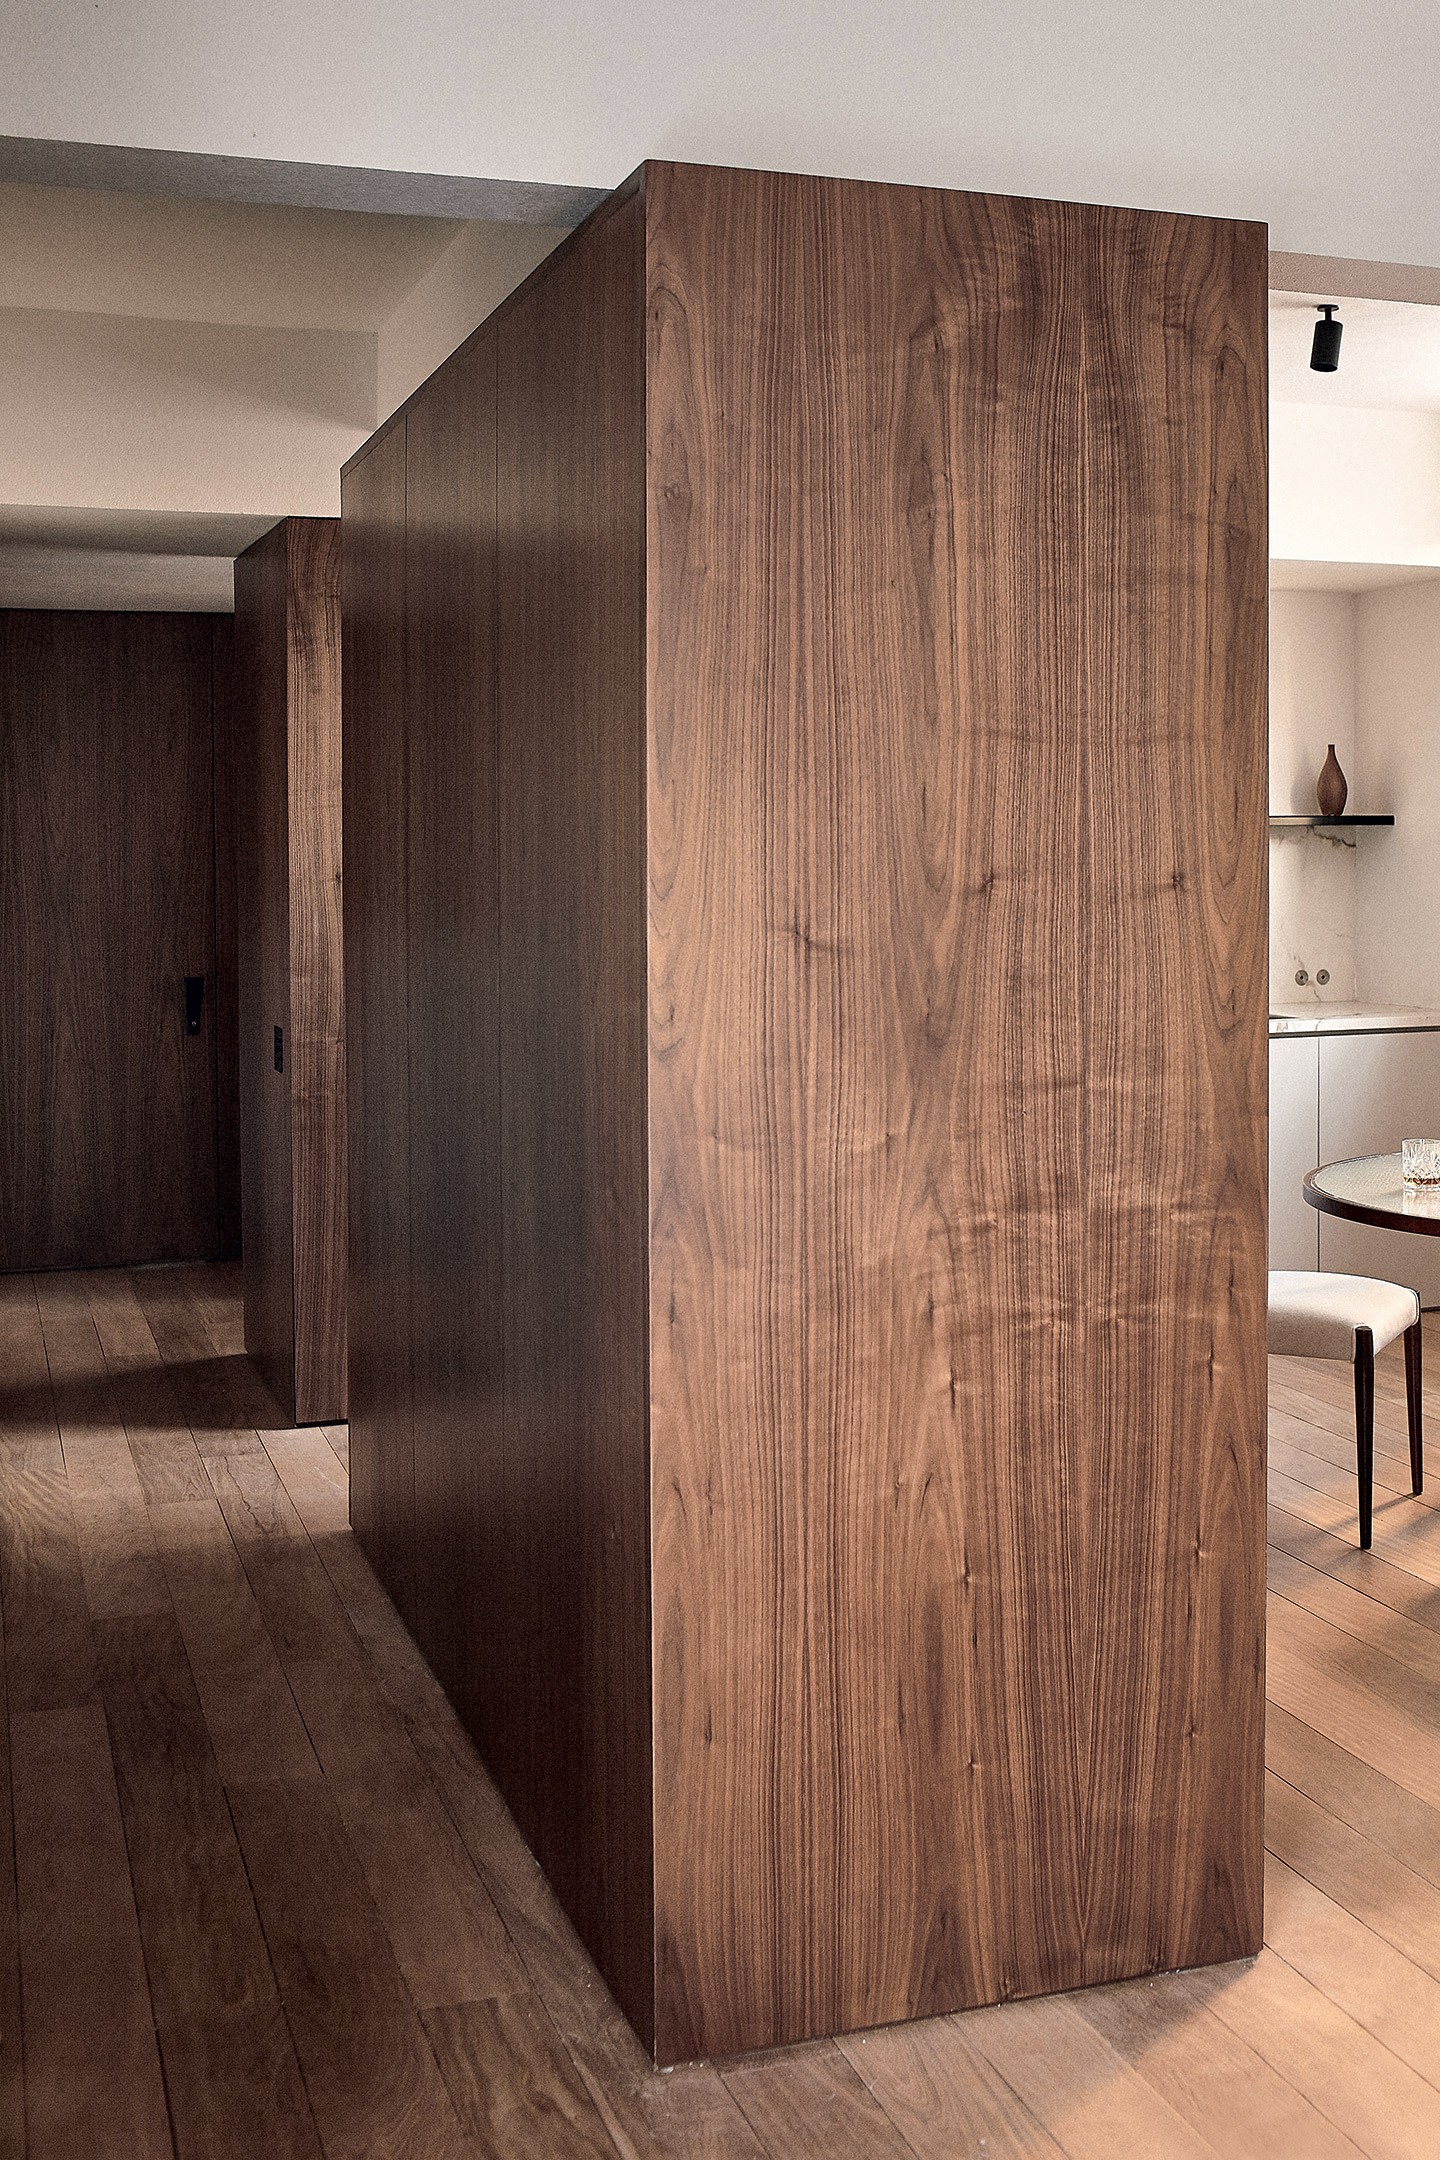 Apê de 127 m² ganha décor minimalista com referências mediterrâneas (Foto: Luiza Maraschin/Divulgação)